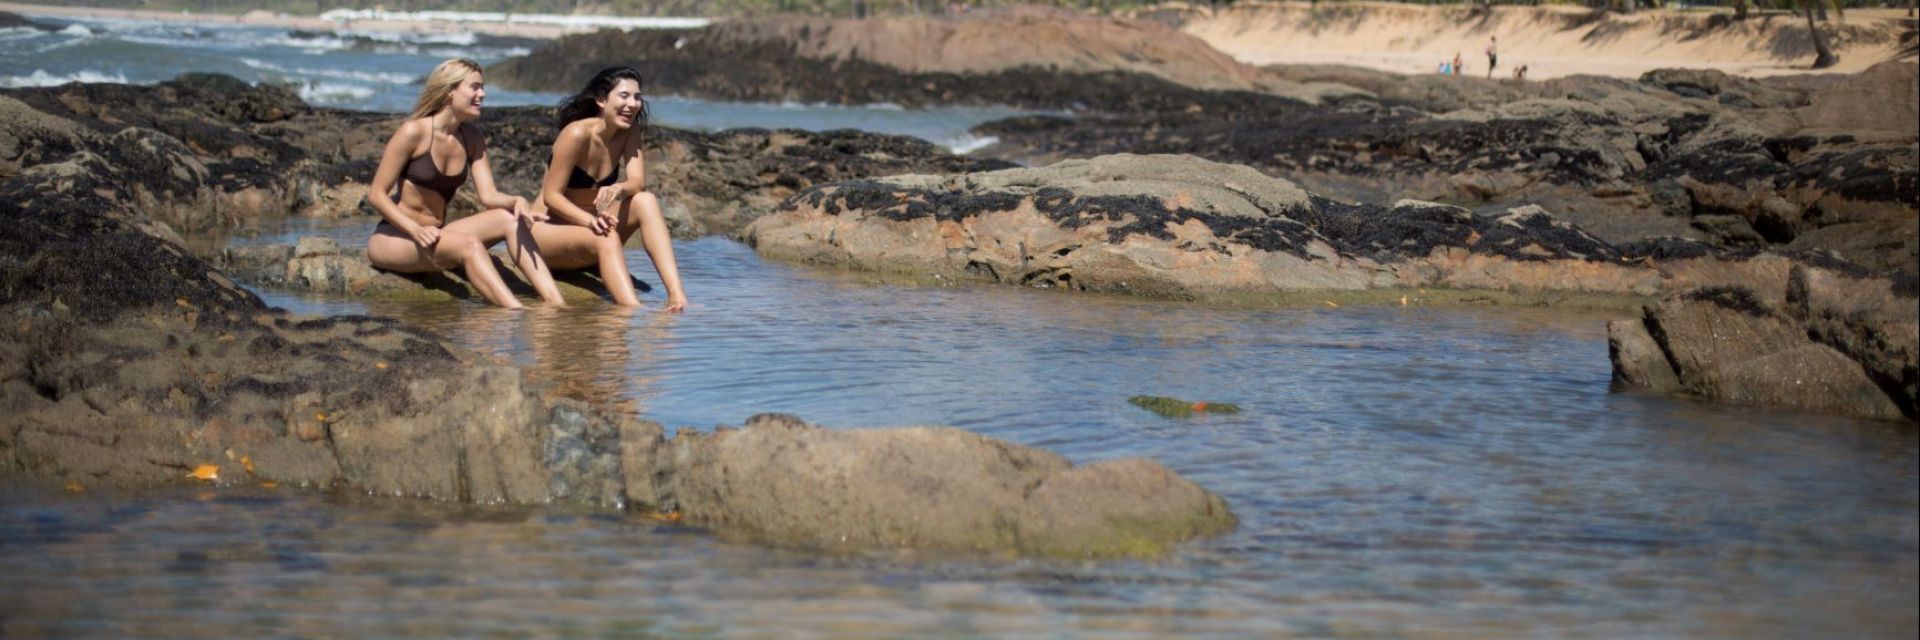 Piscinas naturais: descanse no melhor do litoral baiano